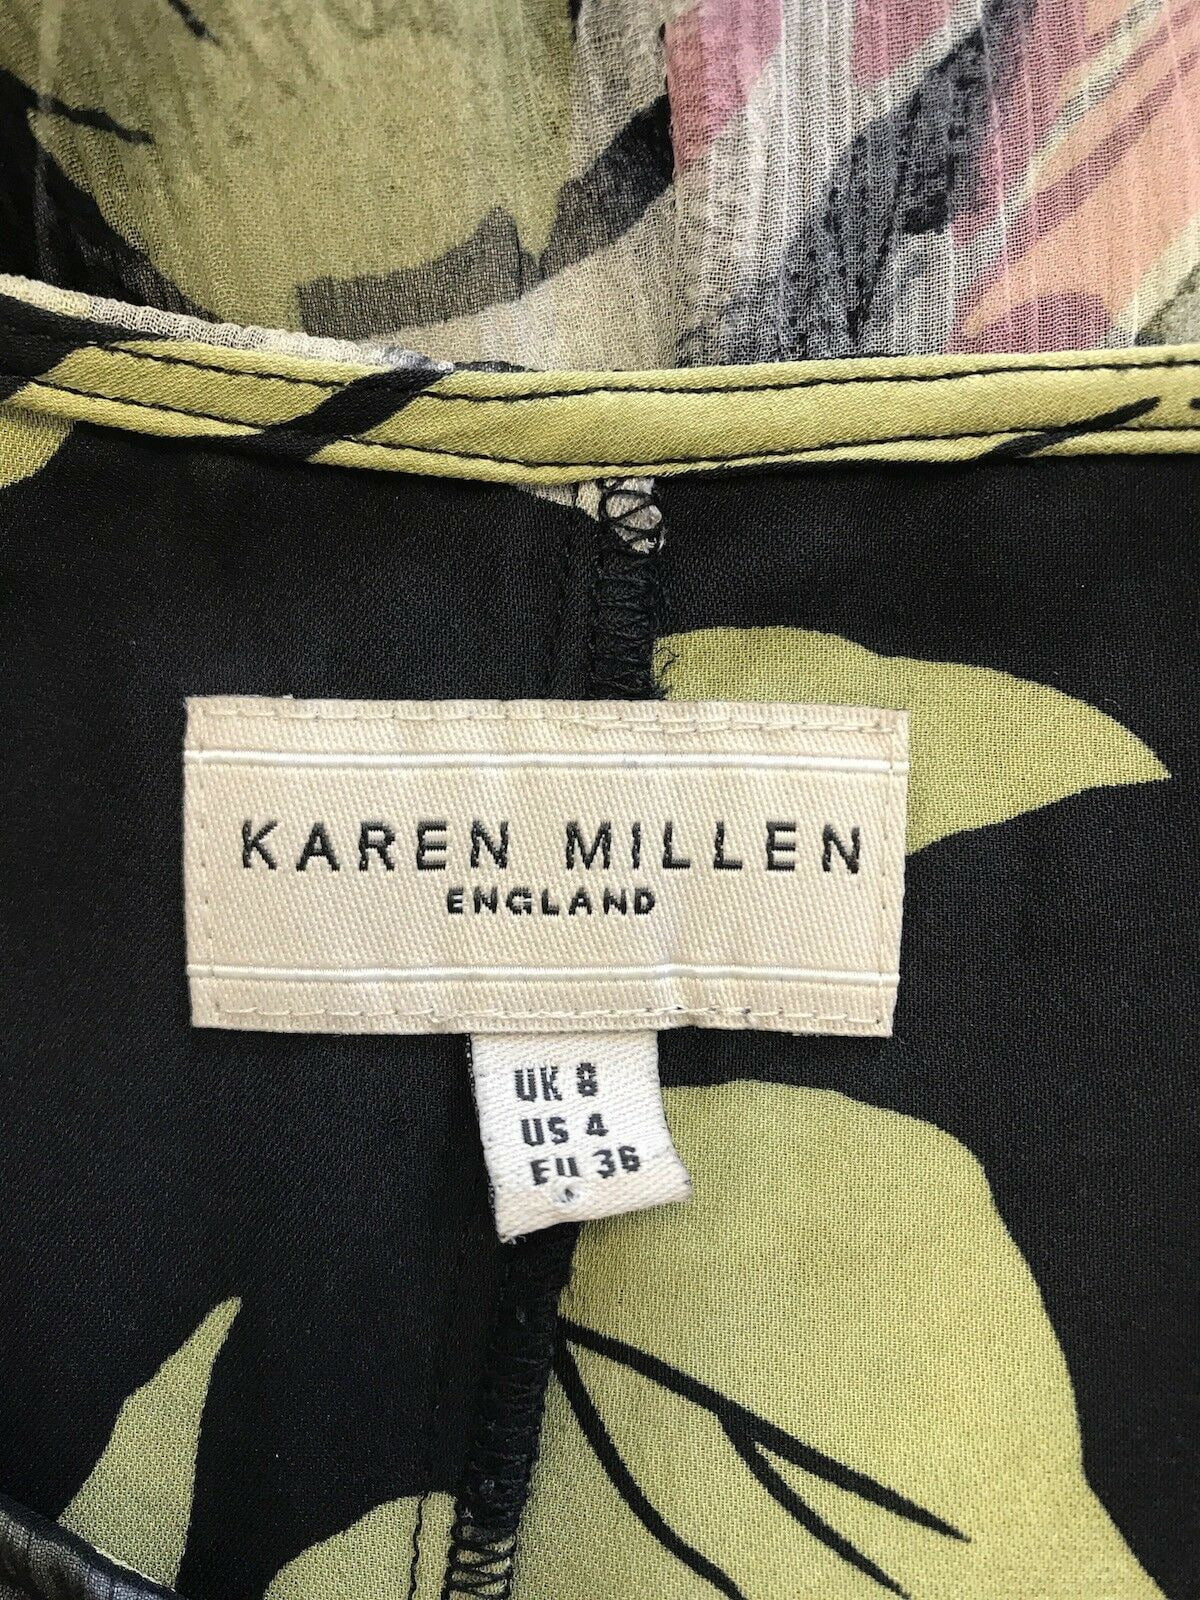 Karen Millen Women's Black Green & Pink Floral Silk Skirt UK 8 US 4 EU 36 Timeless Fashions